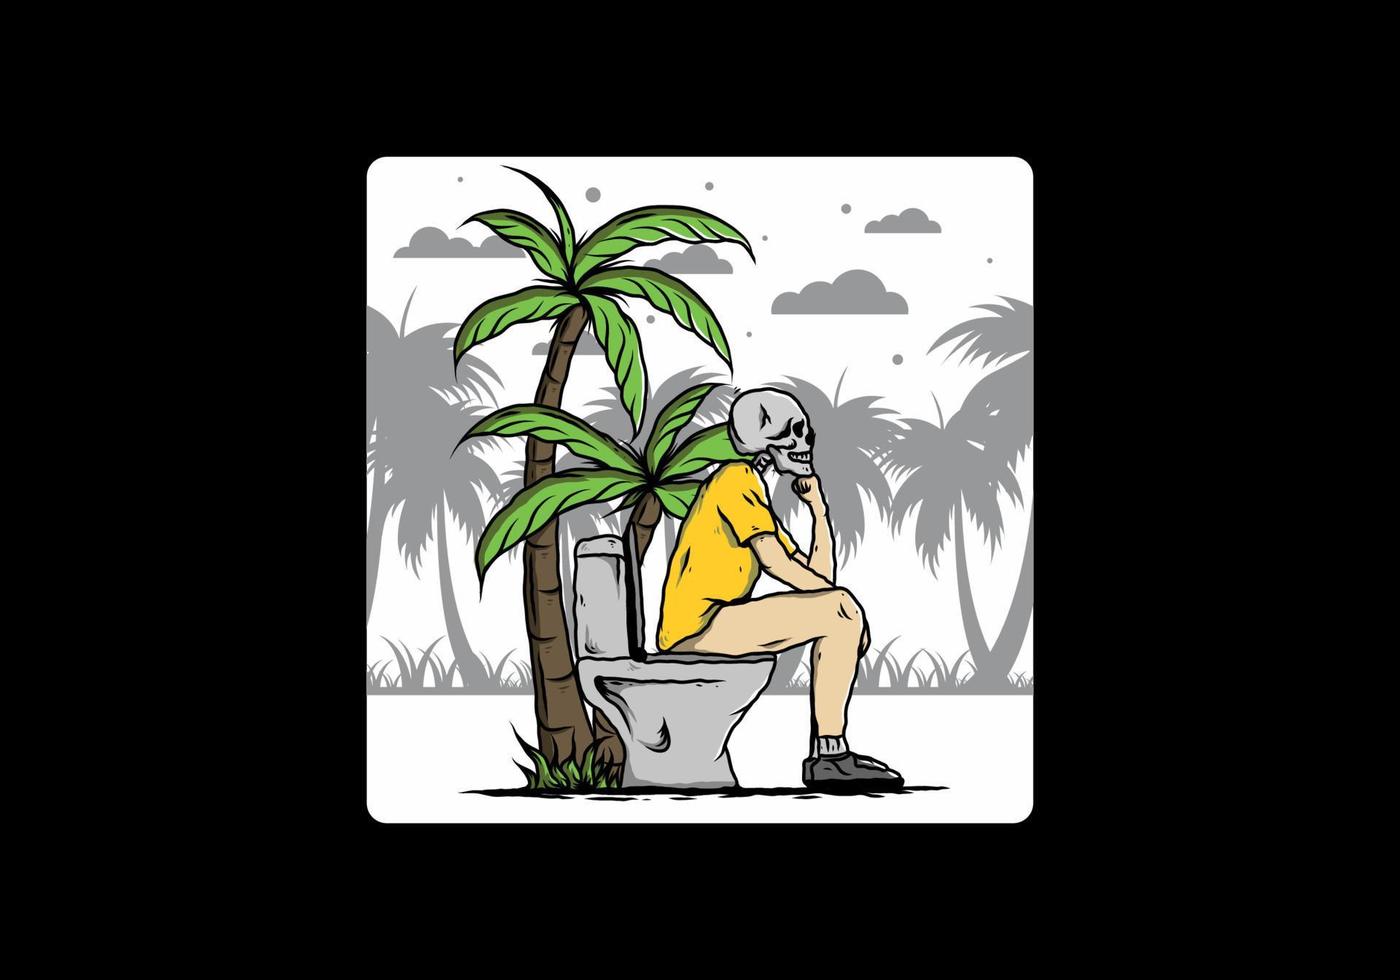 l'uomo scheletro si siede sull'illustrazione della toilette all'aperto vettore